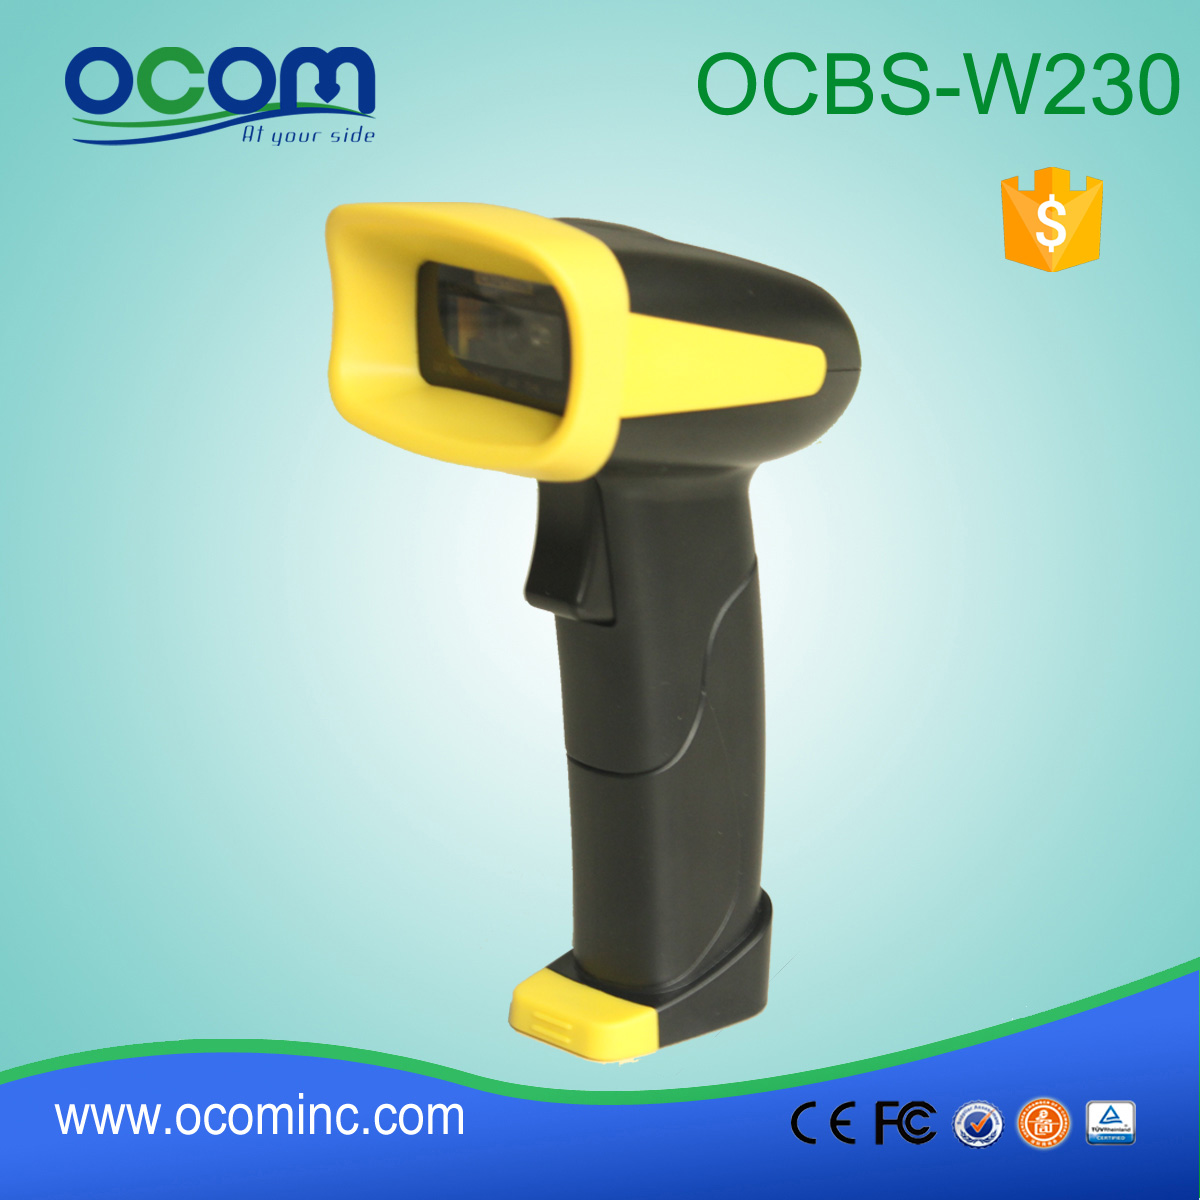 1d OCBS-W230 Chiny 433MHz / Bluetooth / 2d Mini Wireless kodów kreskowych